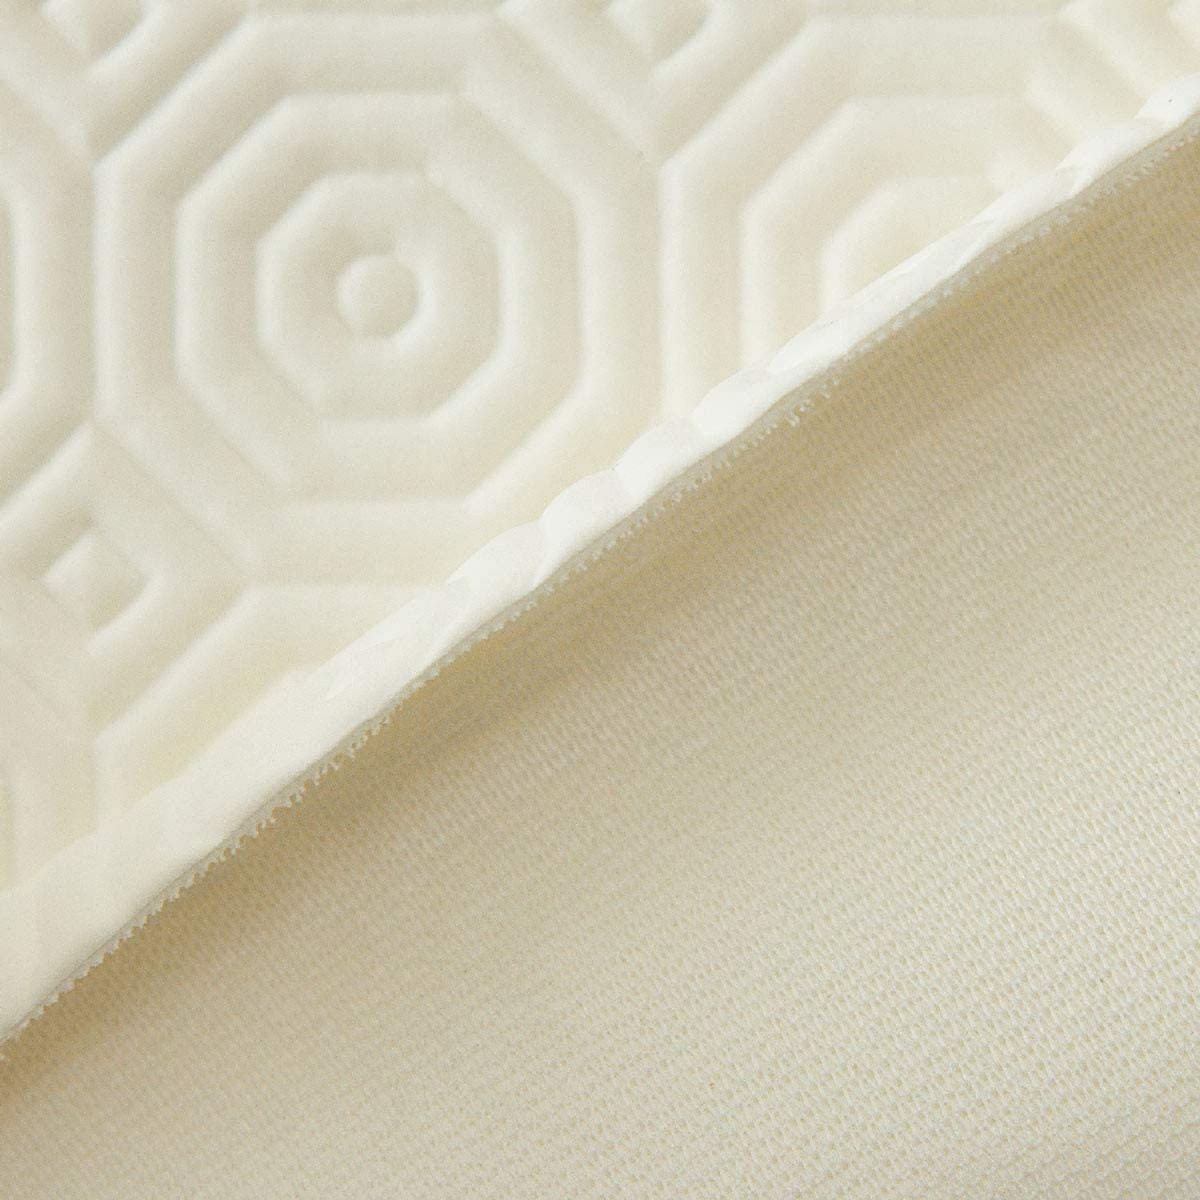 Proteggi Tavolo Gommato Impermeabile Bianco Con Bordo Elesticizzato